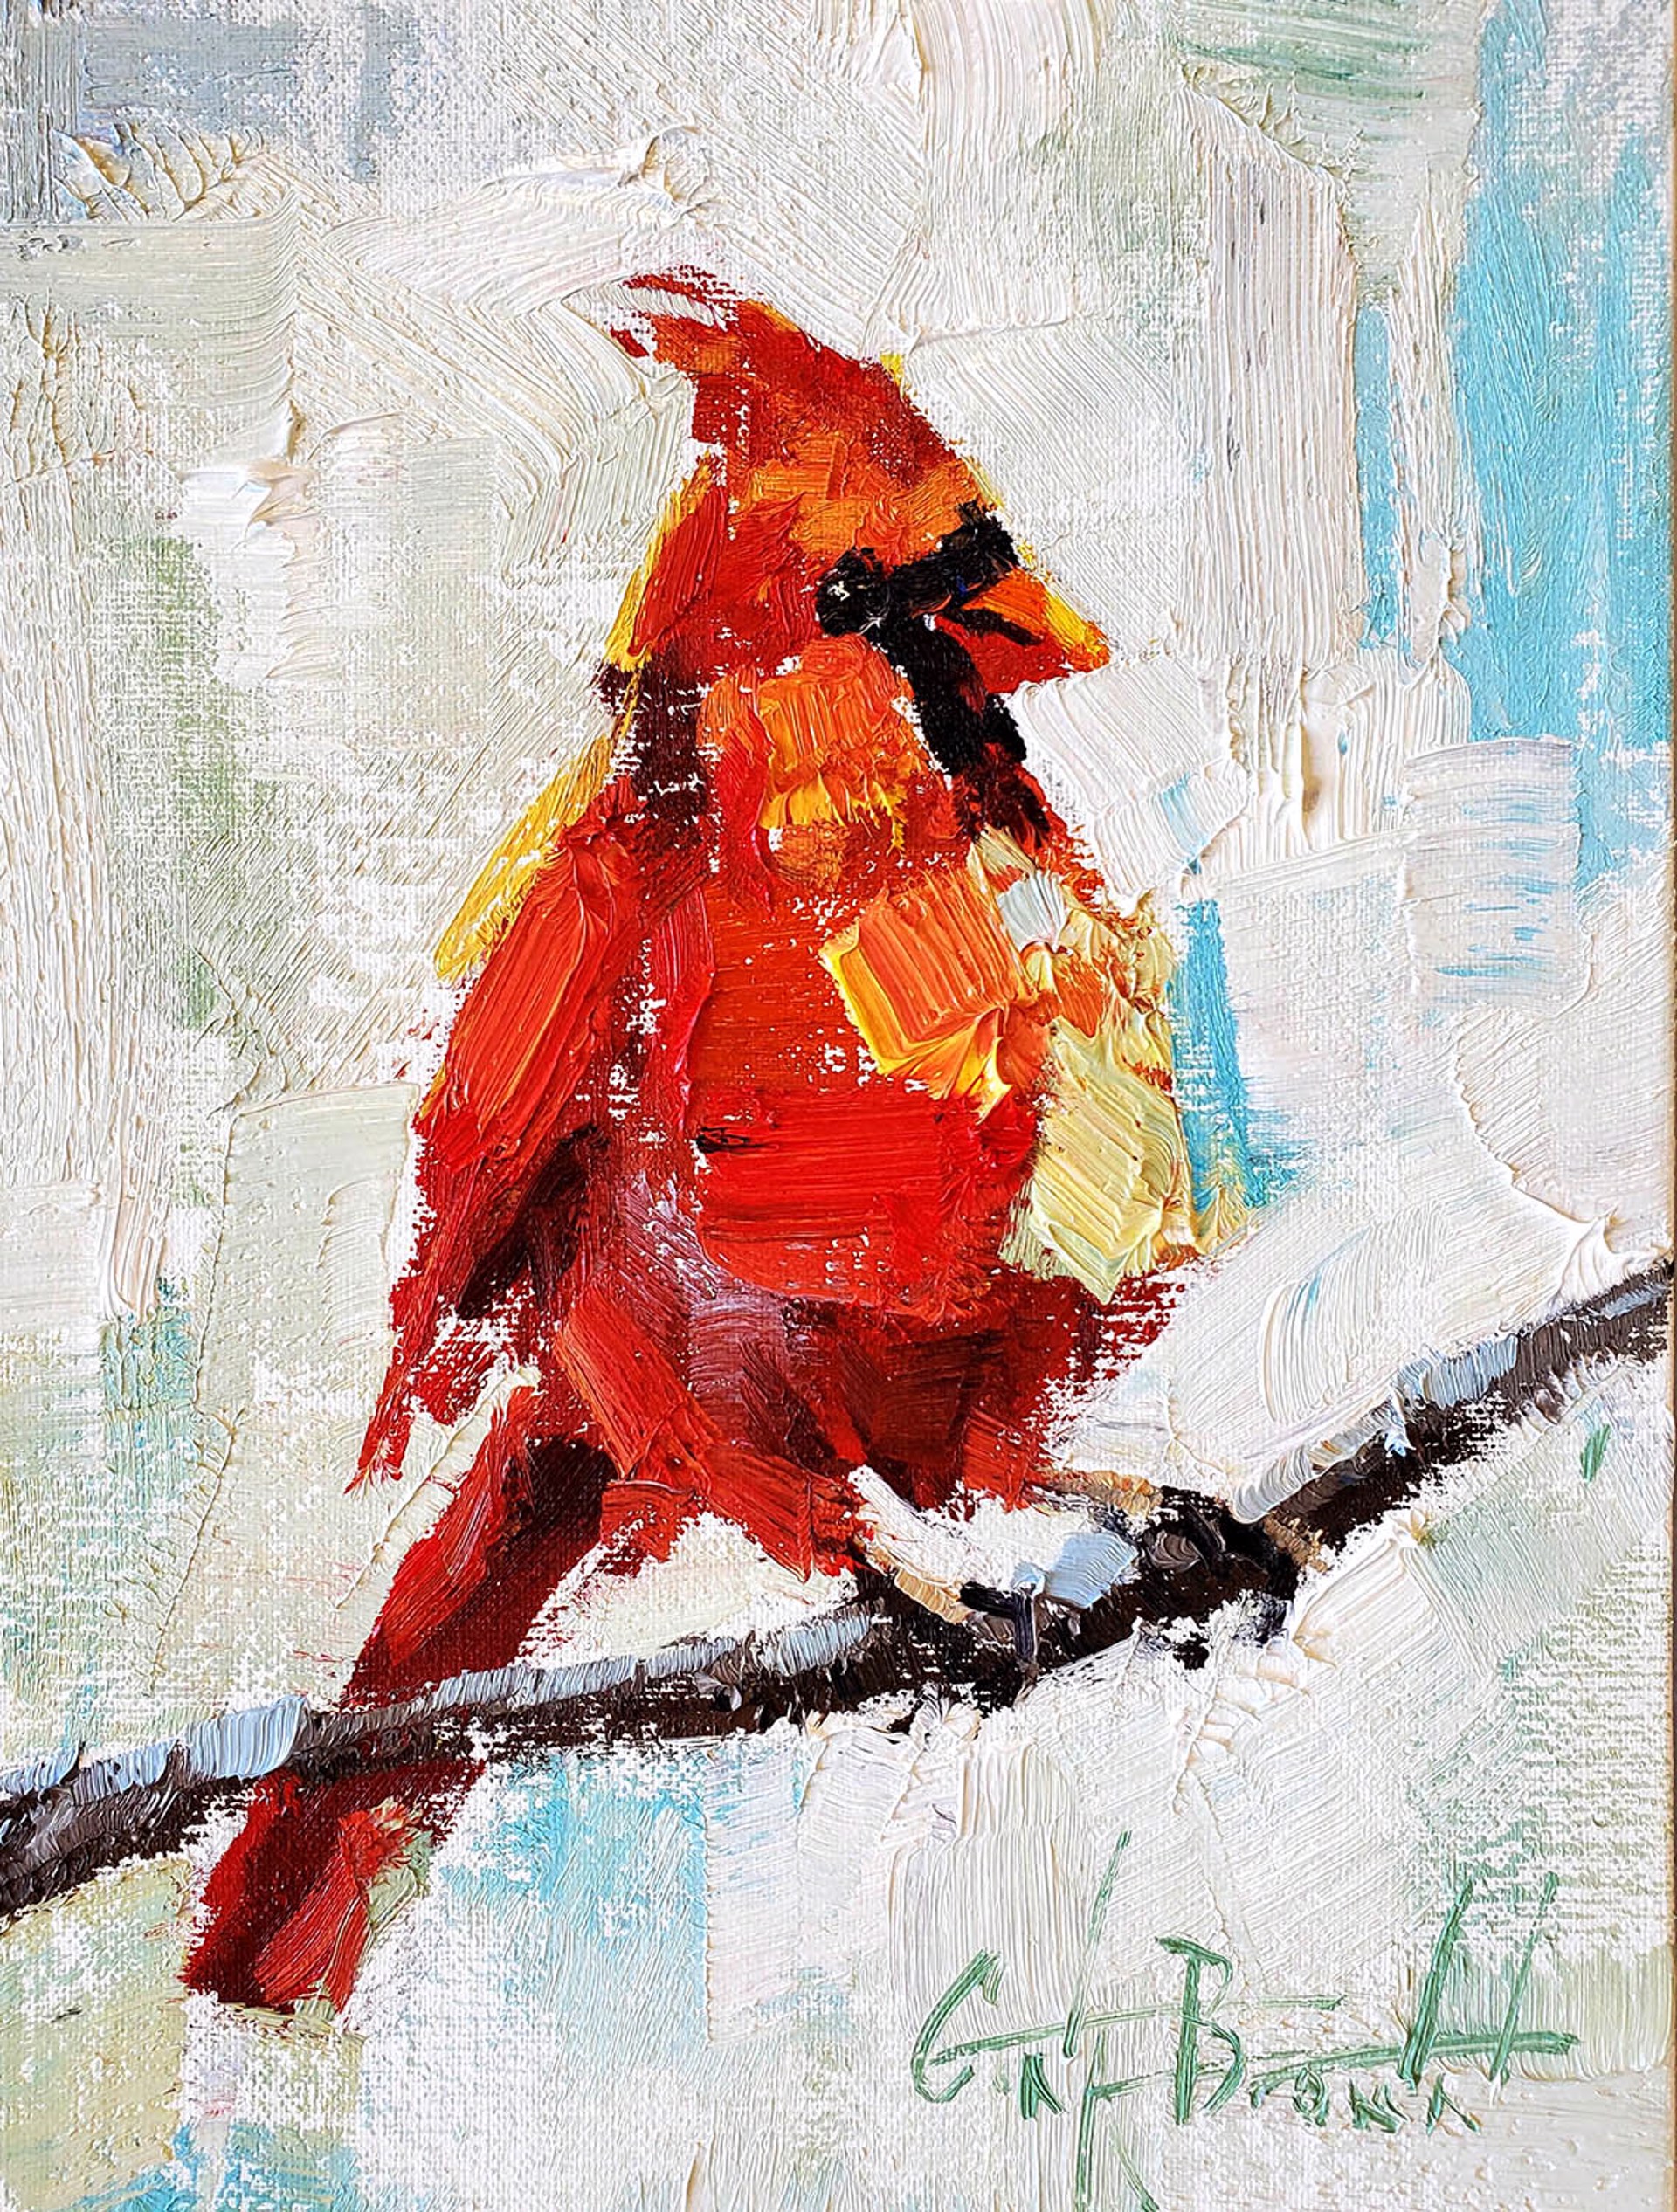 Cardinal by Gina Brown